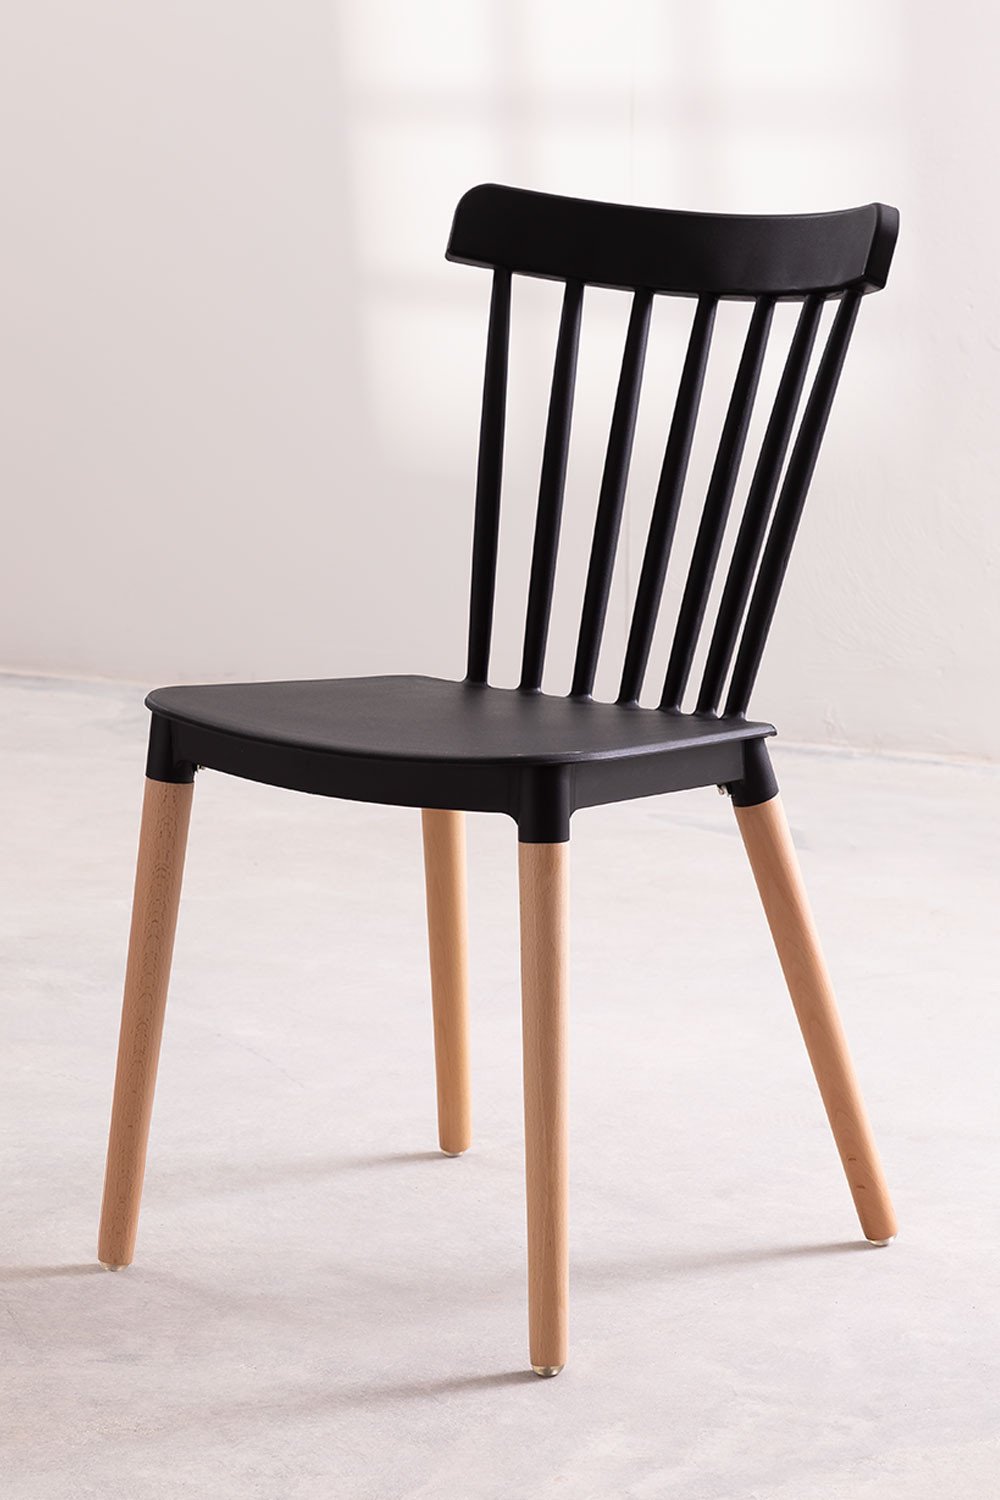 Chaise style scandinave à barreaux modèle POP - Coque en résine noire et pieds en bois naturel